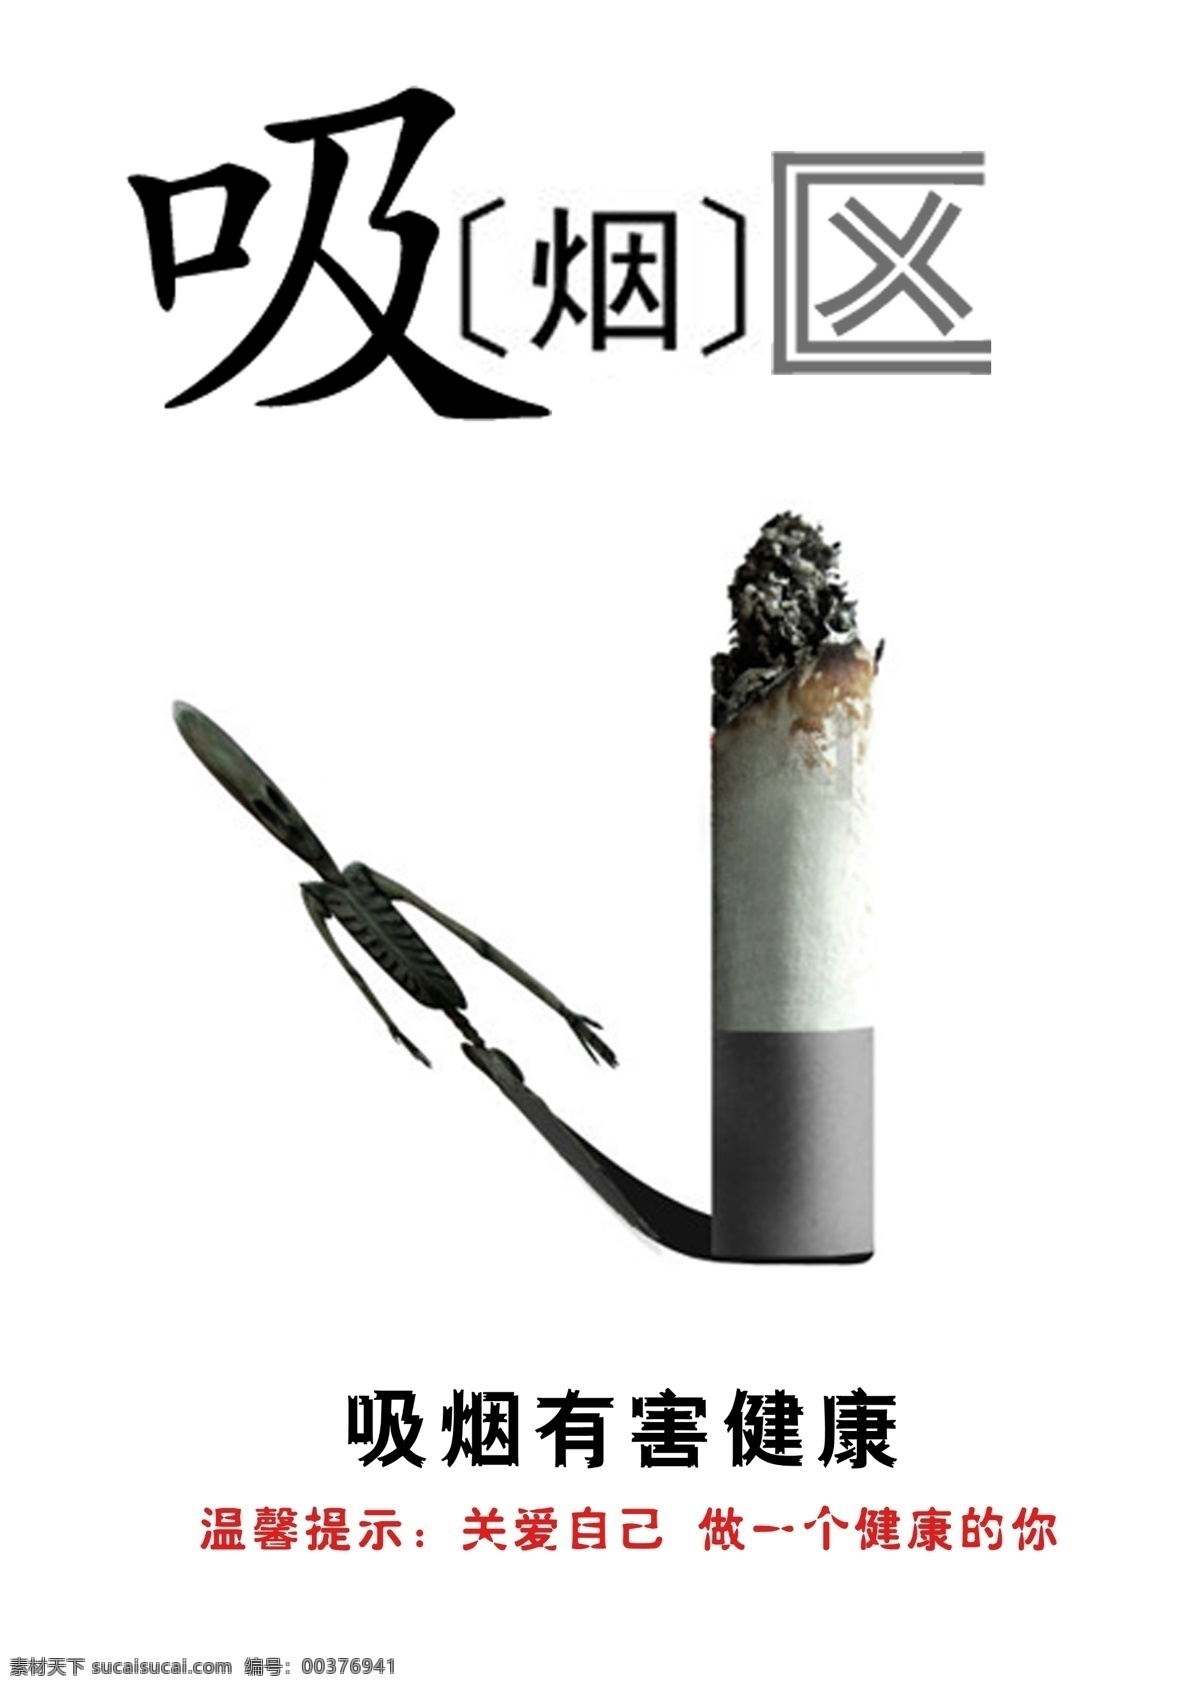 吸烟 有害 健康 广告 吸烟有害健康 吸烟的危害 吸烟的人 吸烟危害健康 白色